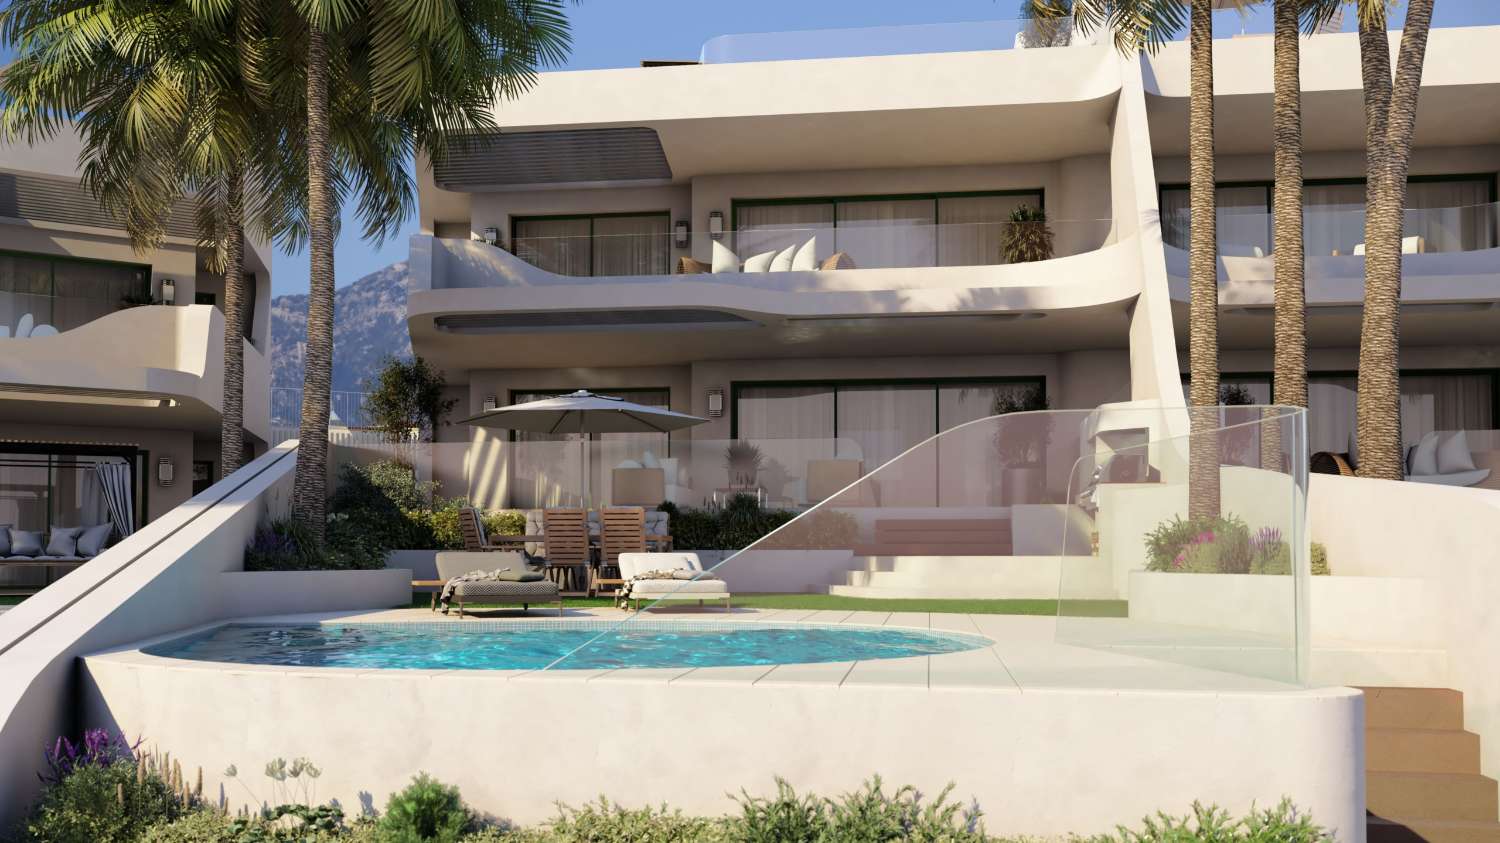 Case di nuova costruzione a Marbella, Cabopino. Solo 8 unità. Sono tutte dotate di piscina privata.